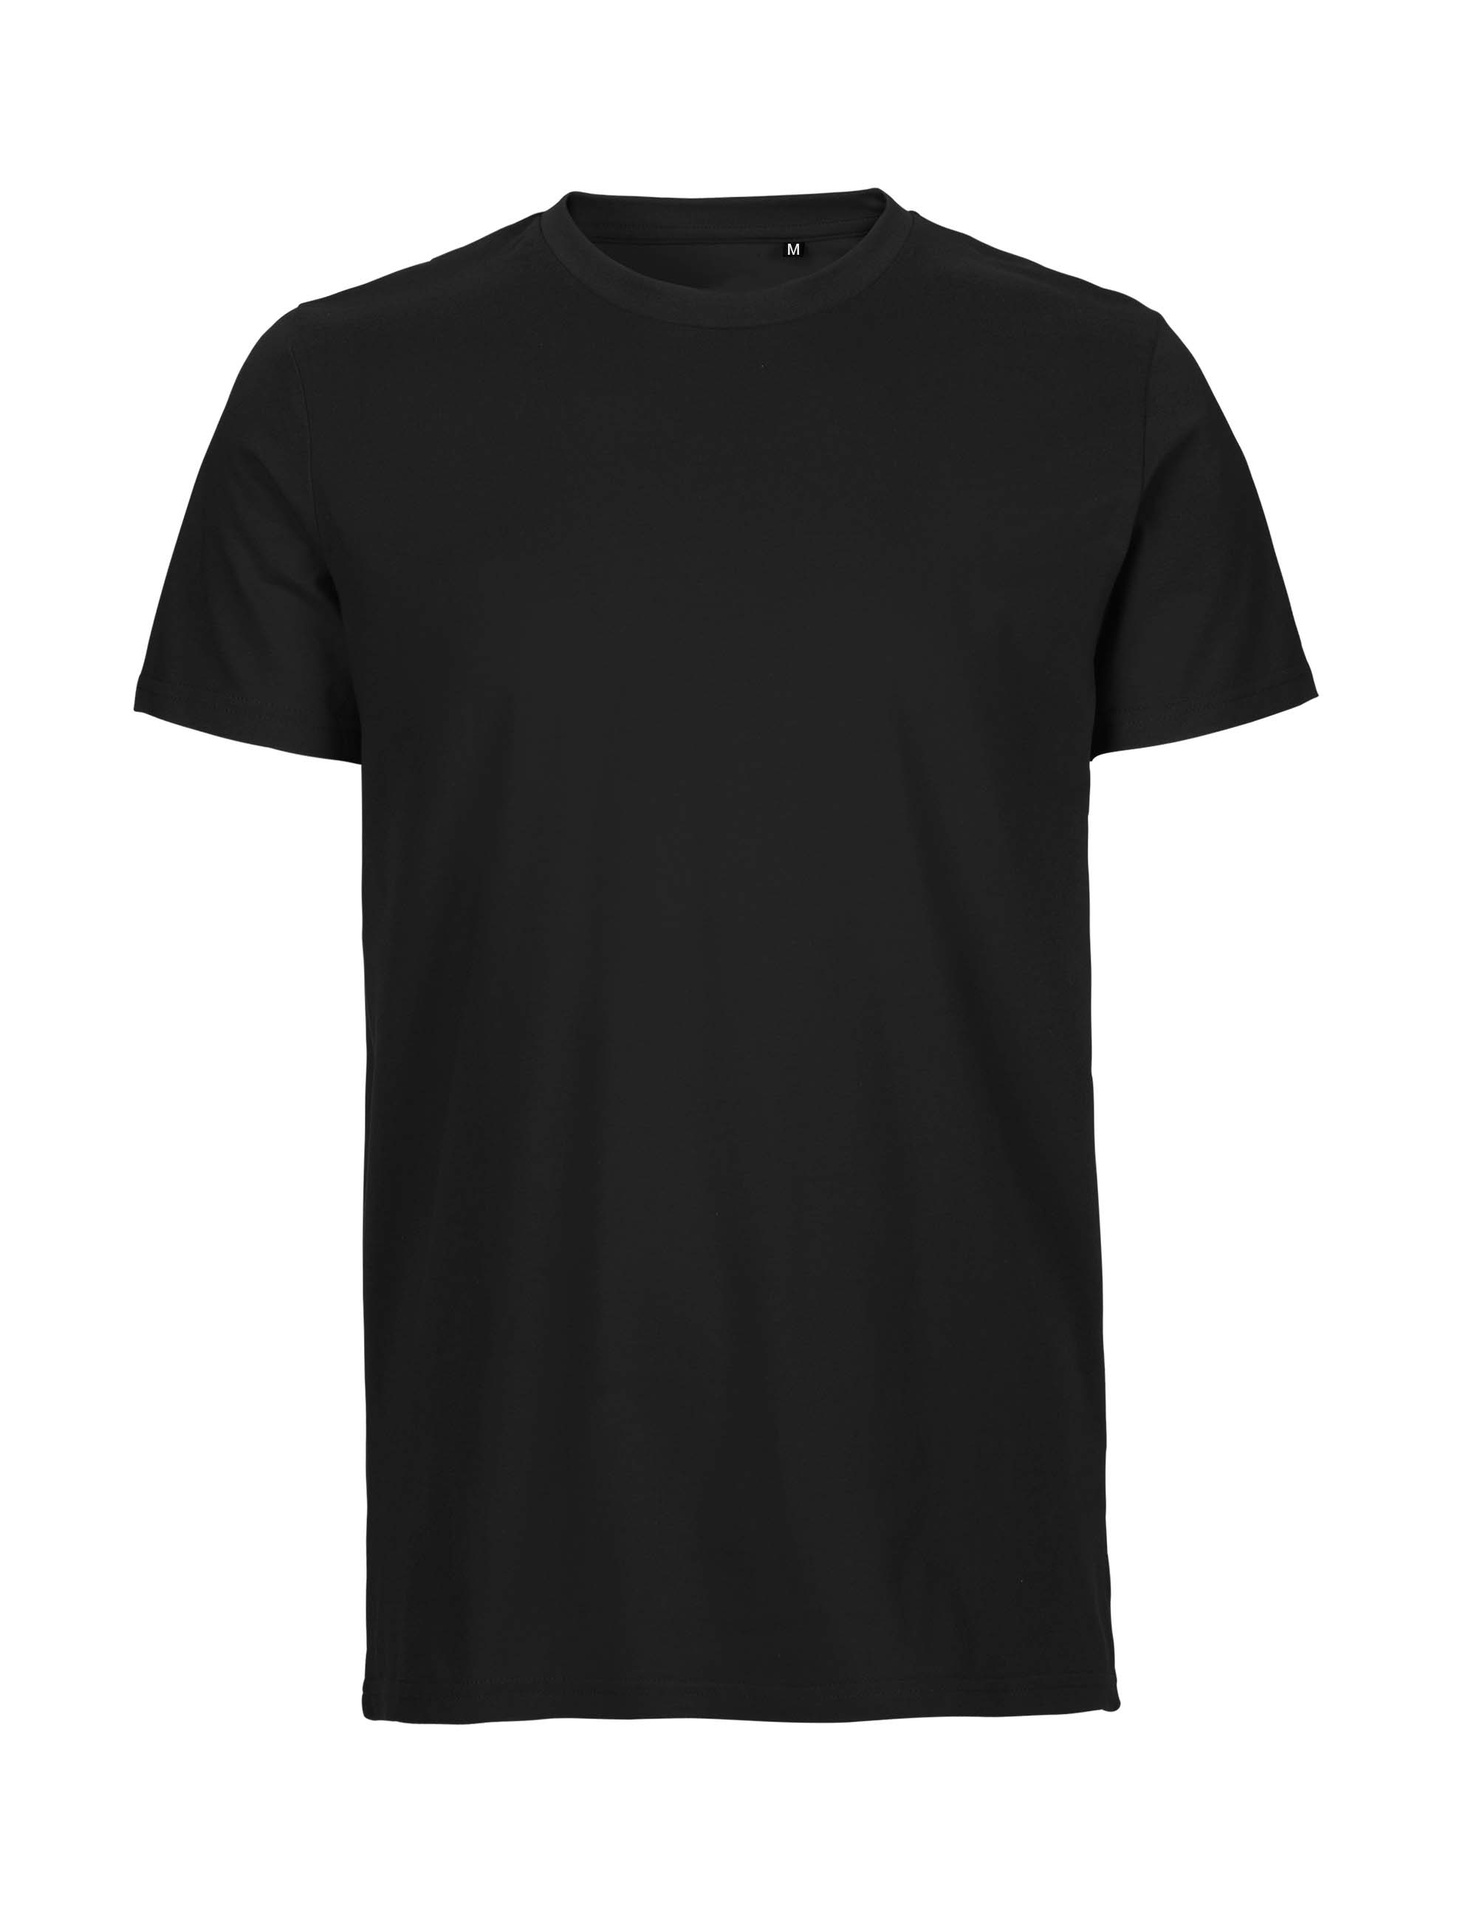 [PR/05992] Unisex Tiger Cotton T-Shirt (Black 03, S)